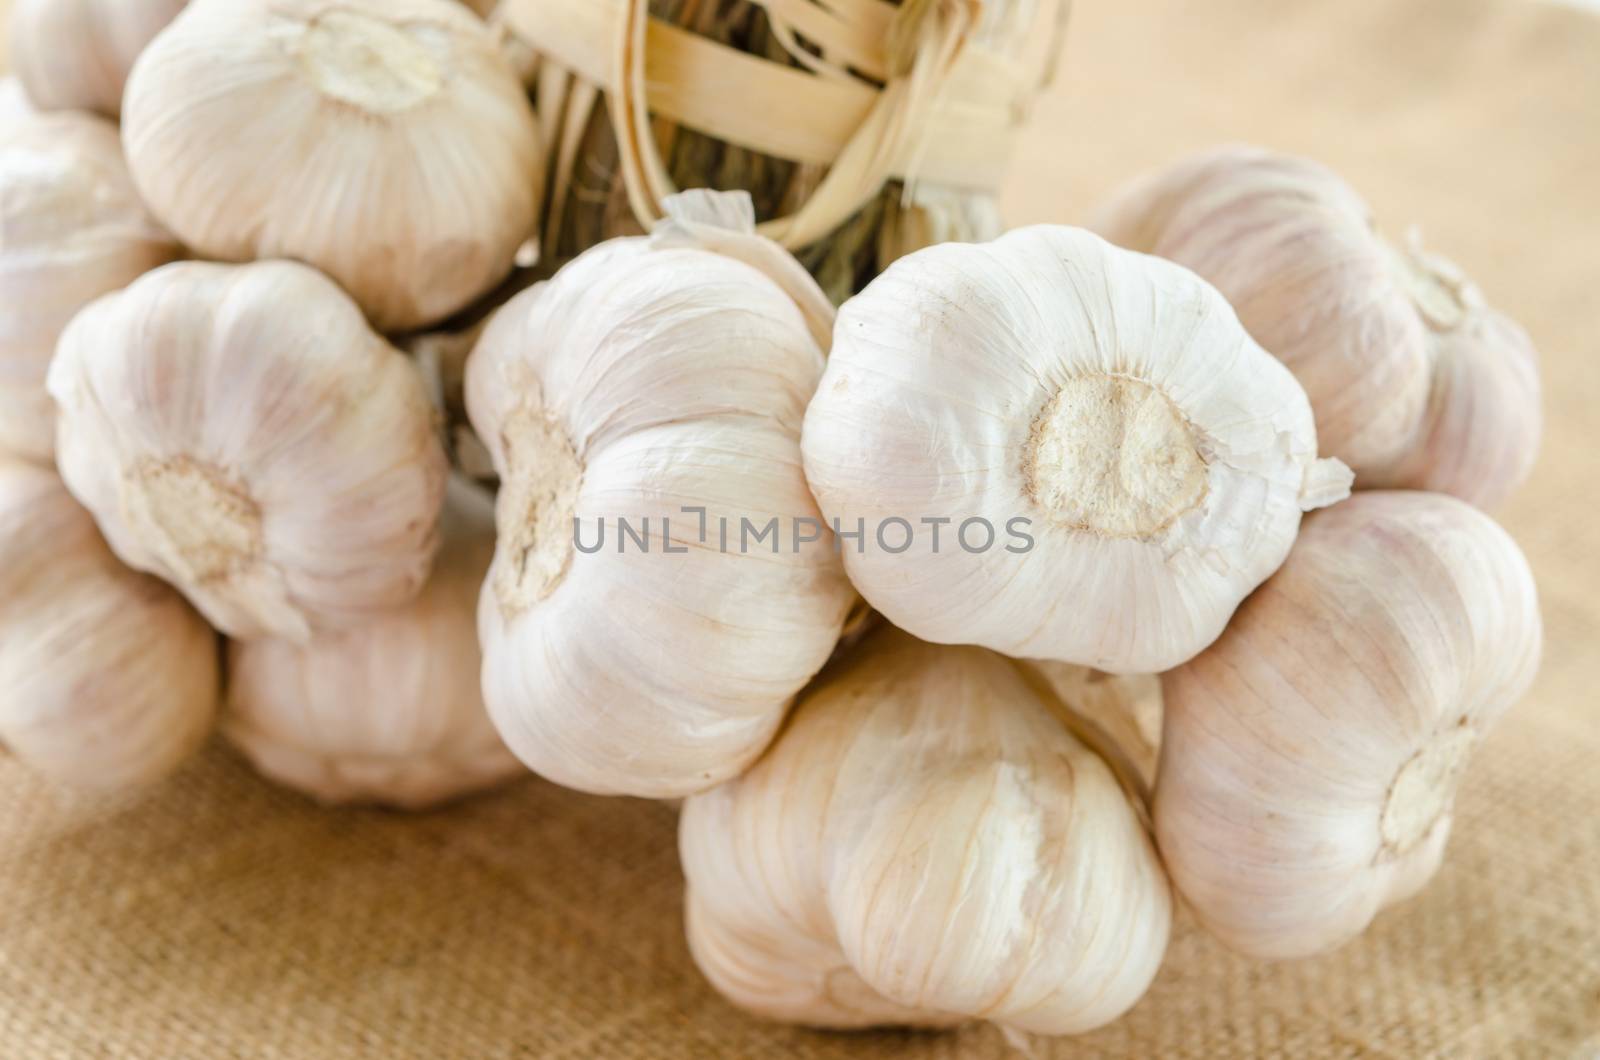 Whole garlic on sack background.